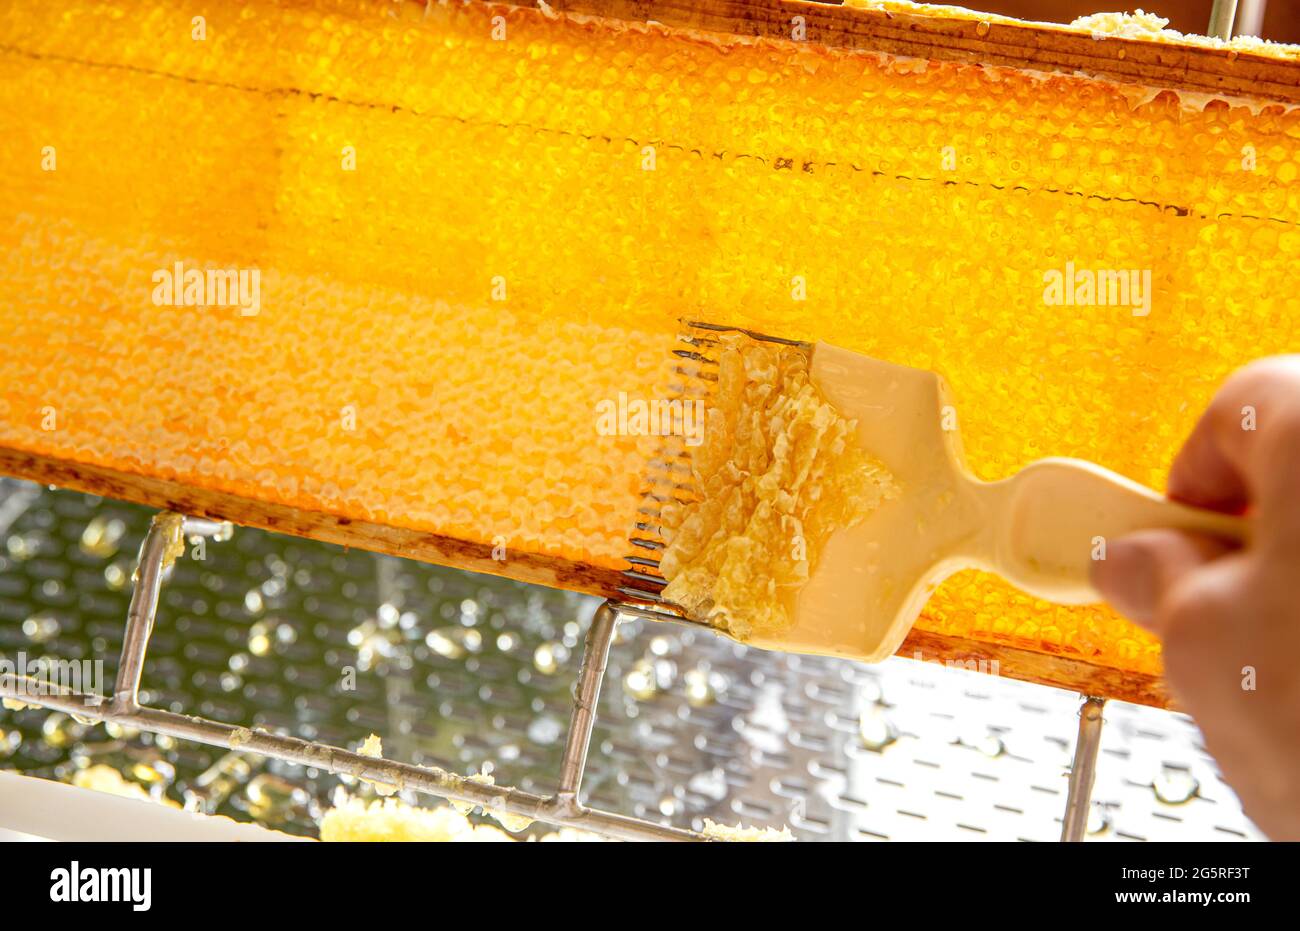 Detailansicht des Hobby-Imkers, der Honig aus der Wabe extrahiert und mit der Gabel abklatscht. Holzrahmen aus Honigbiene auf einem nicht aufschließenden Tablett Stockfoto